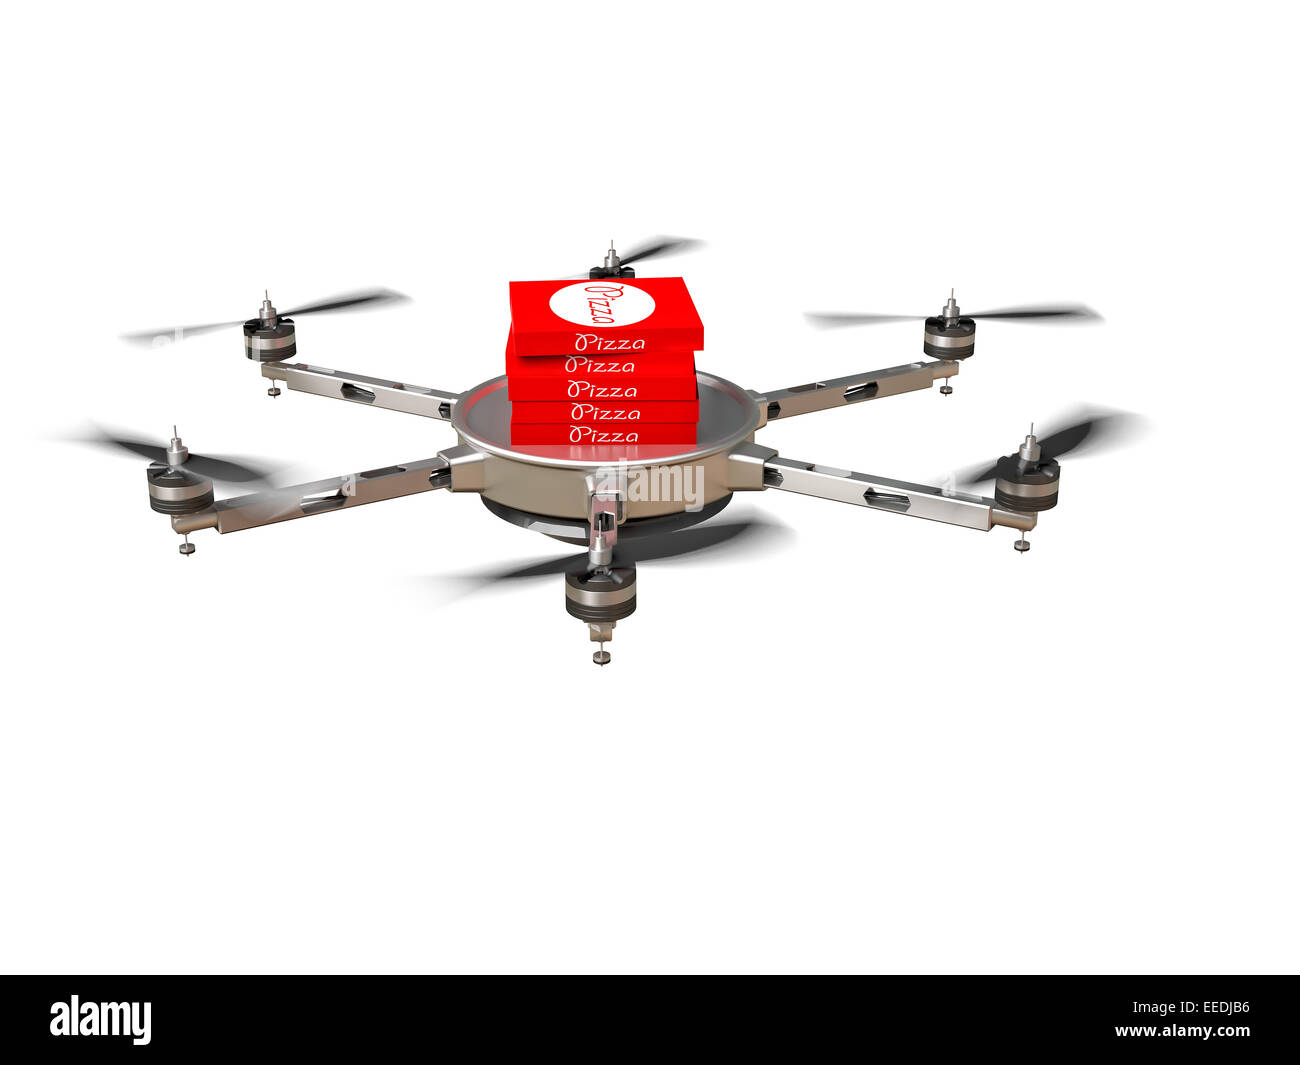 Image 3D de drone de livraison de pizza futuriste Banque D'Images